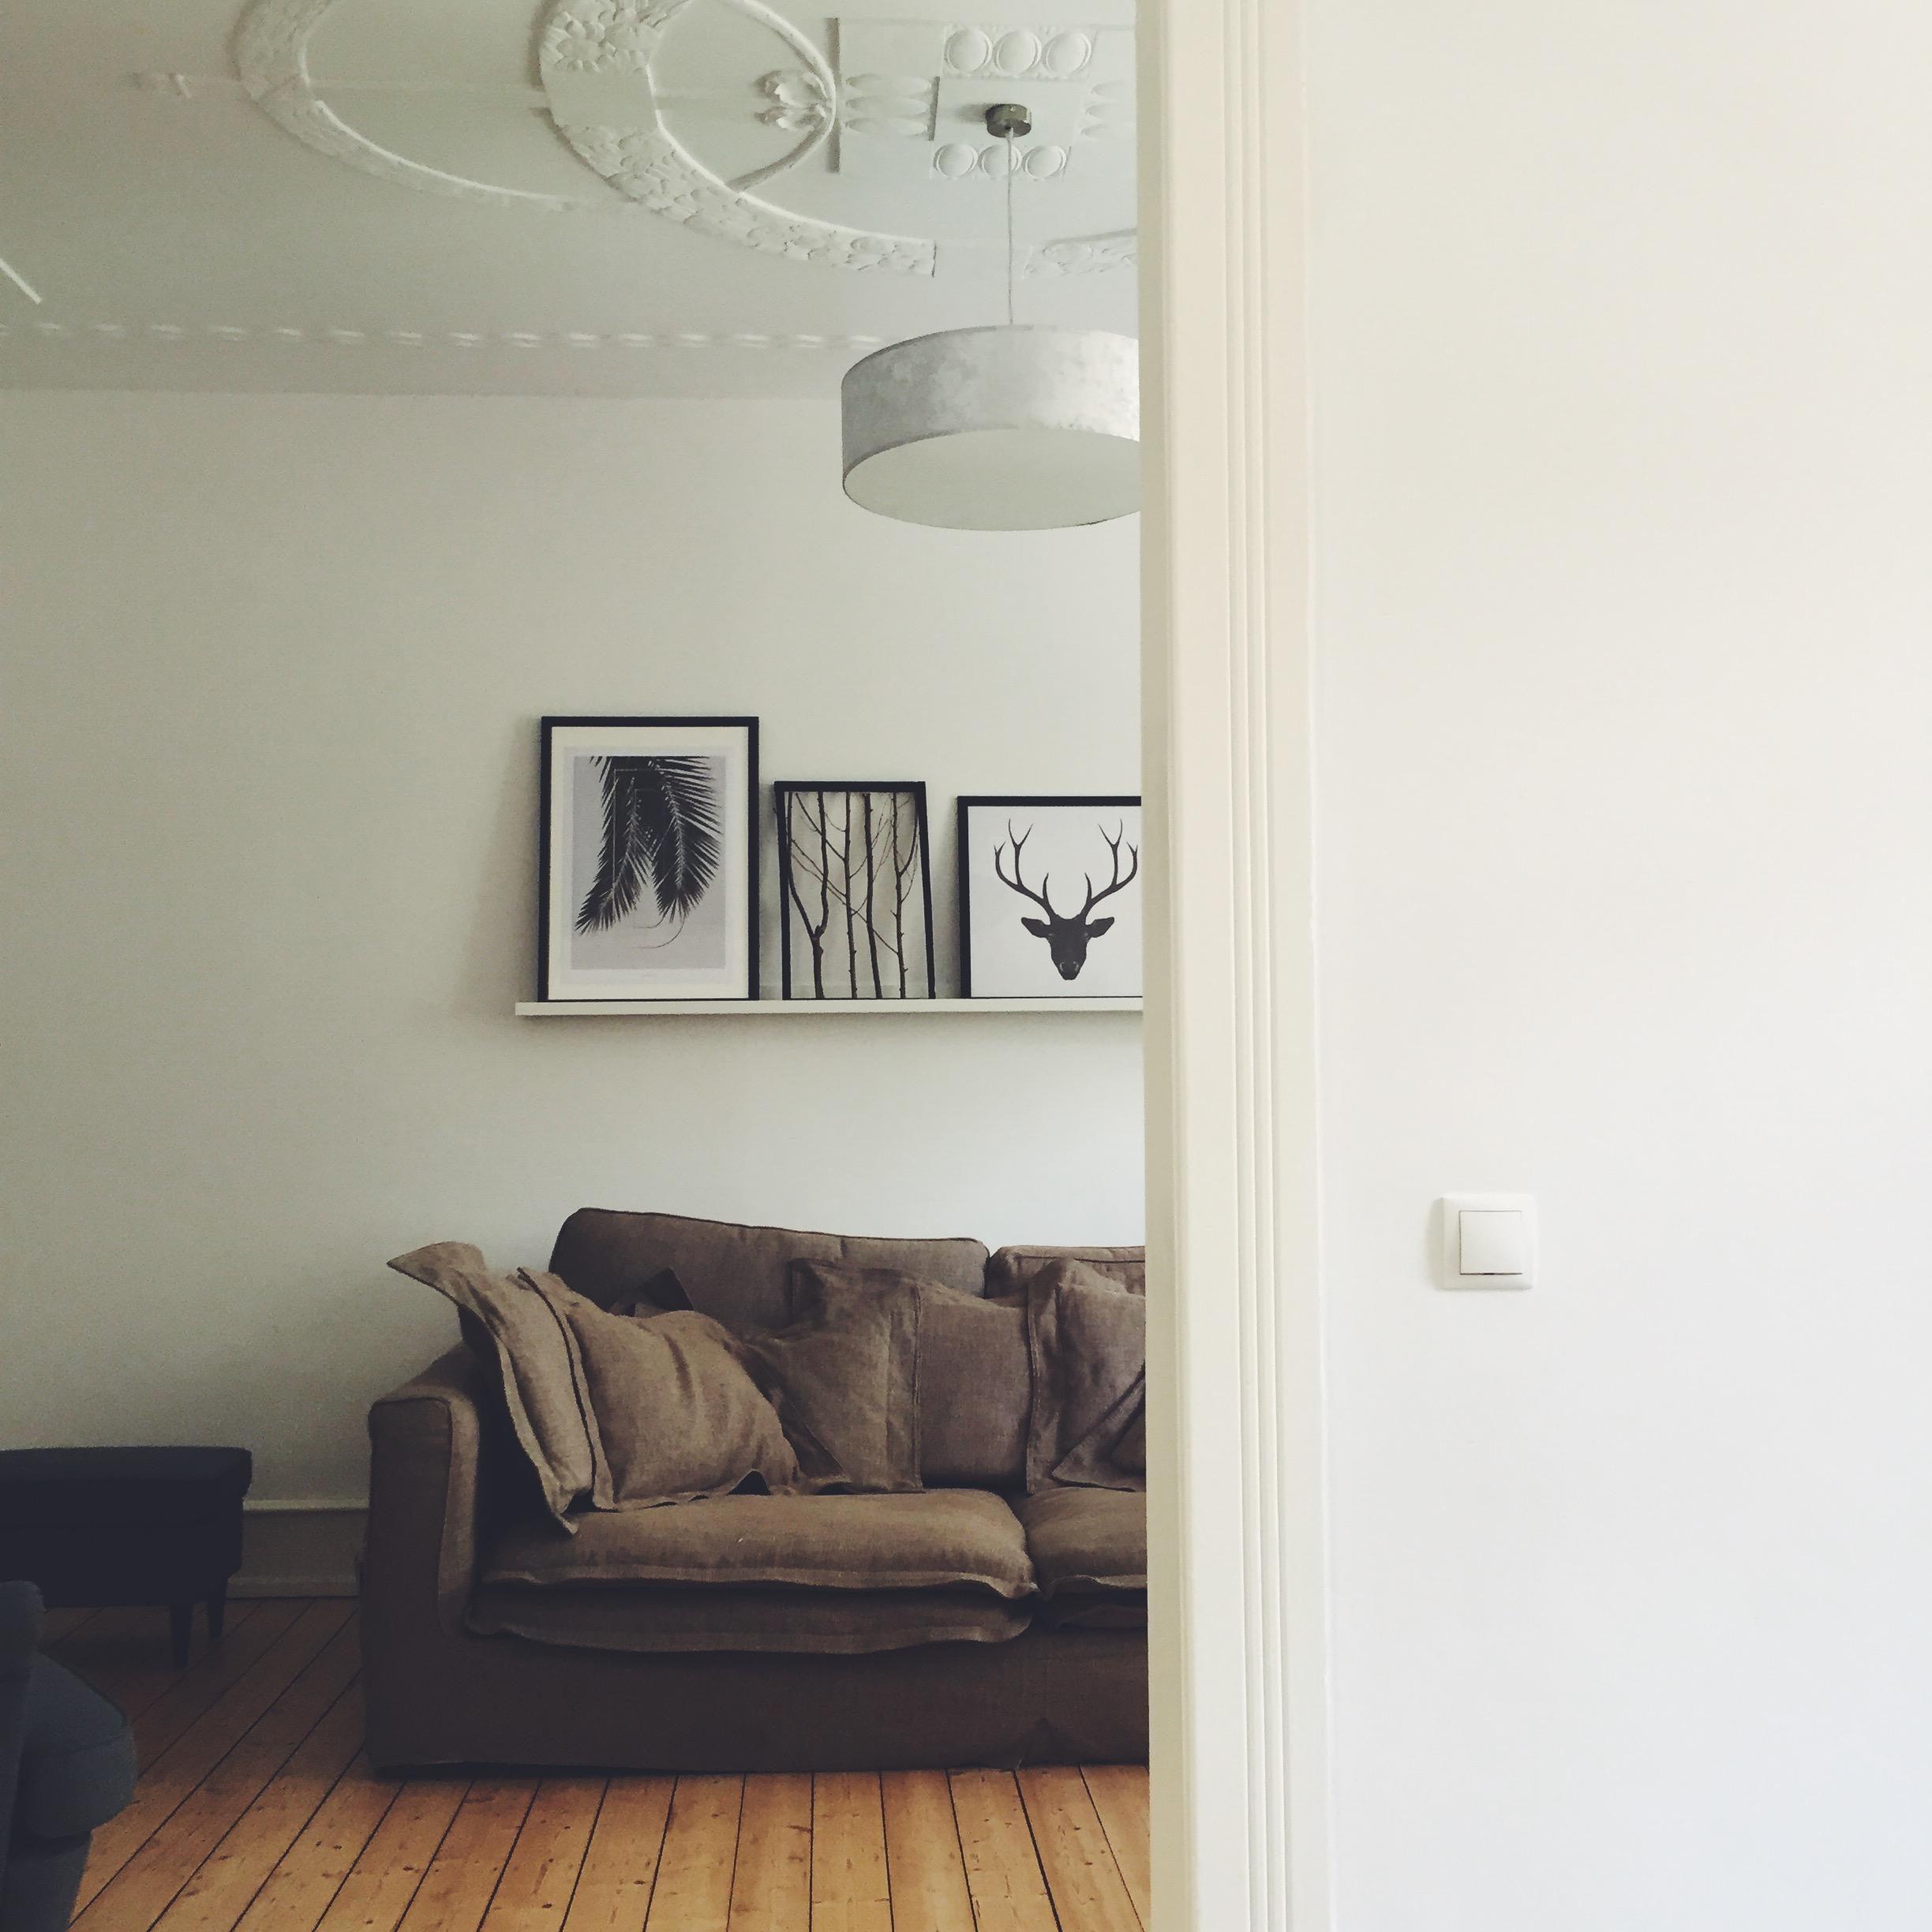 Lieblings Ort in der alten Wohnung 🙌🏻
#couch #lieblingsort #wohnzimmer #stuck #altbau